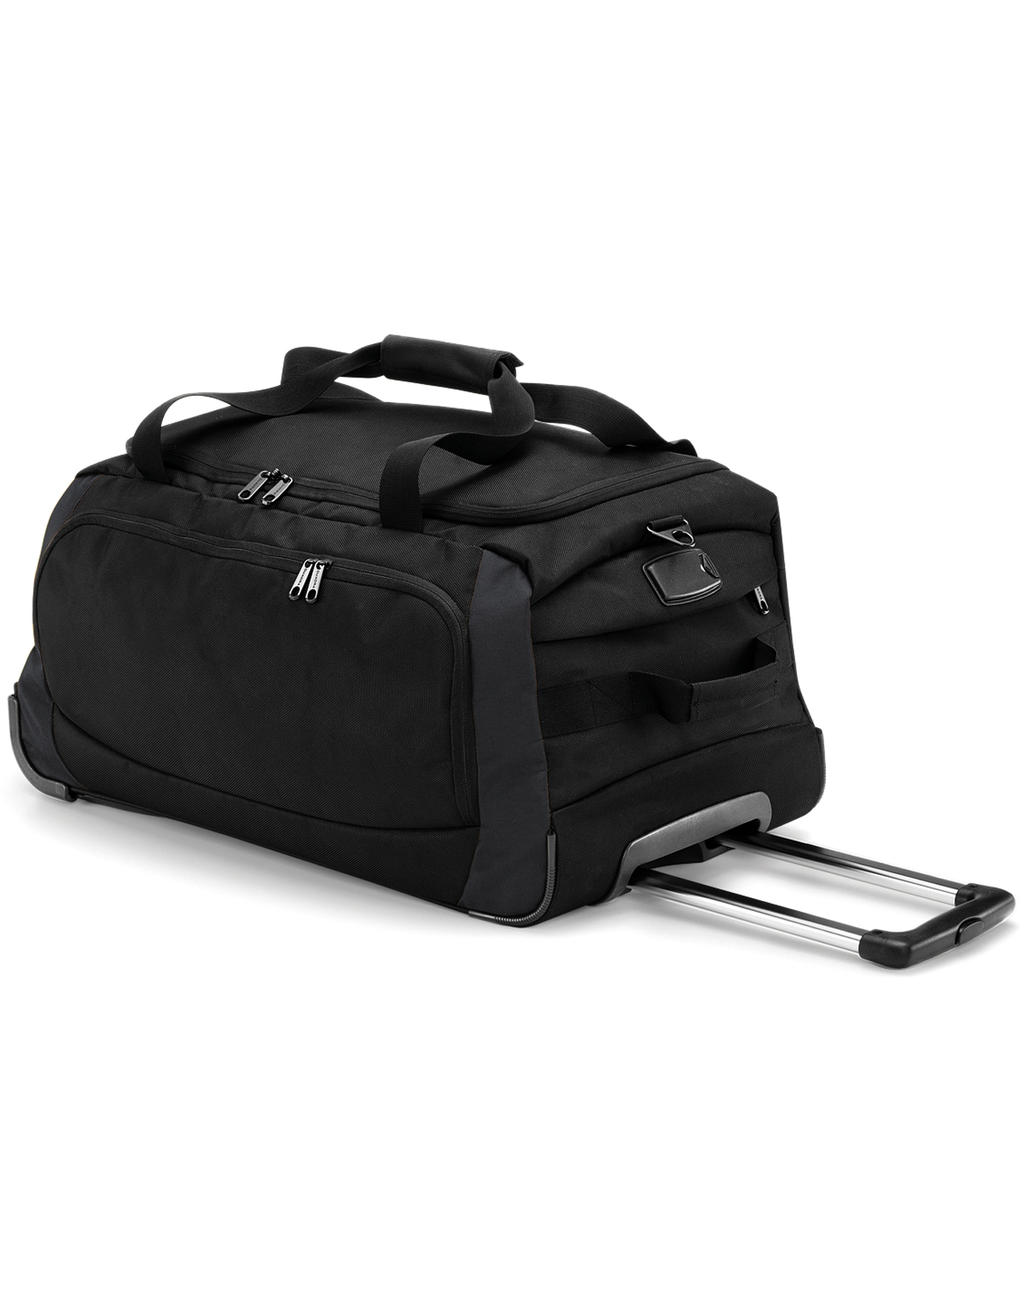 Cestovná taška na kolieskach Tungsten - black/dark graphite